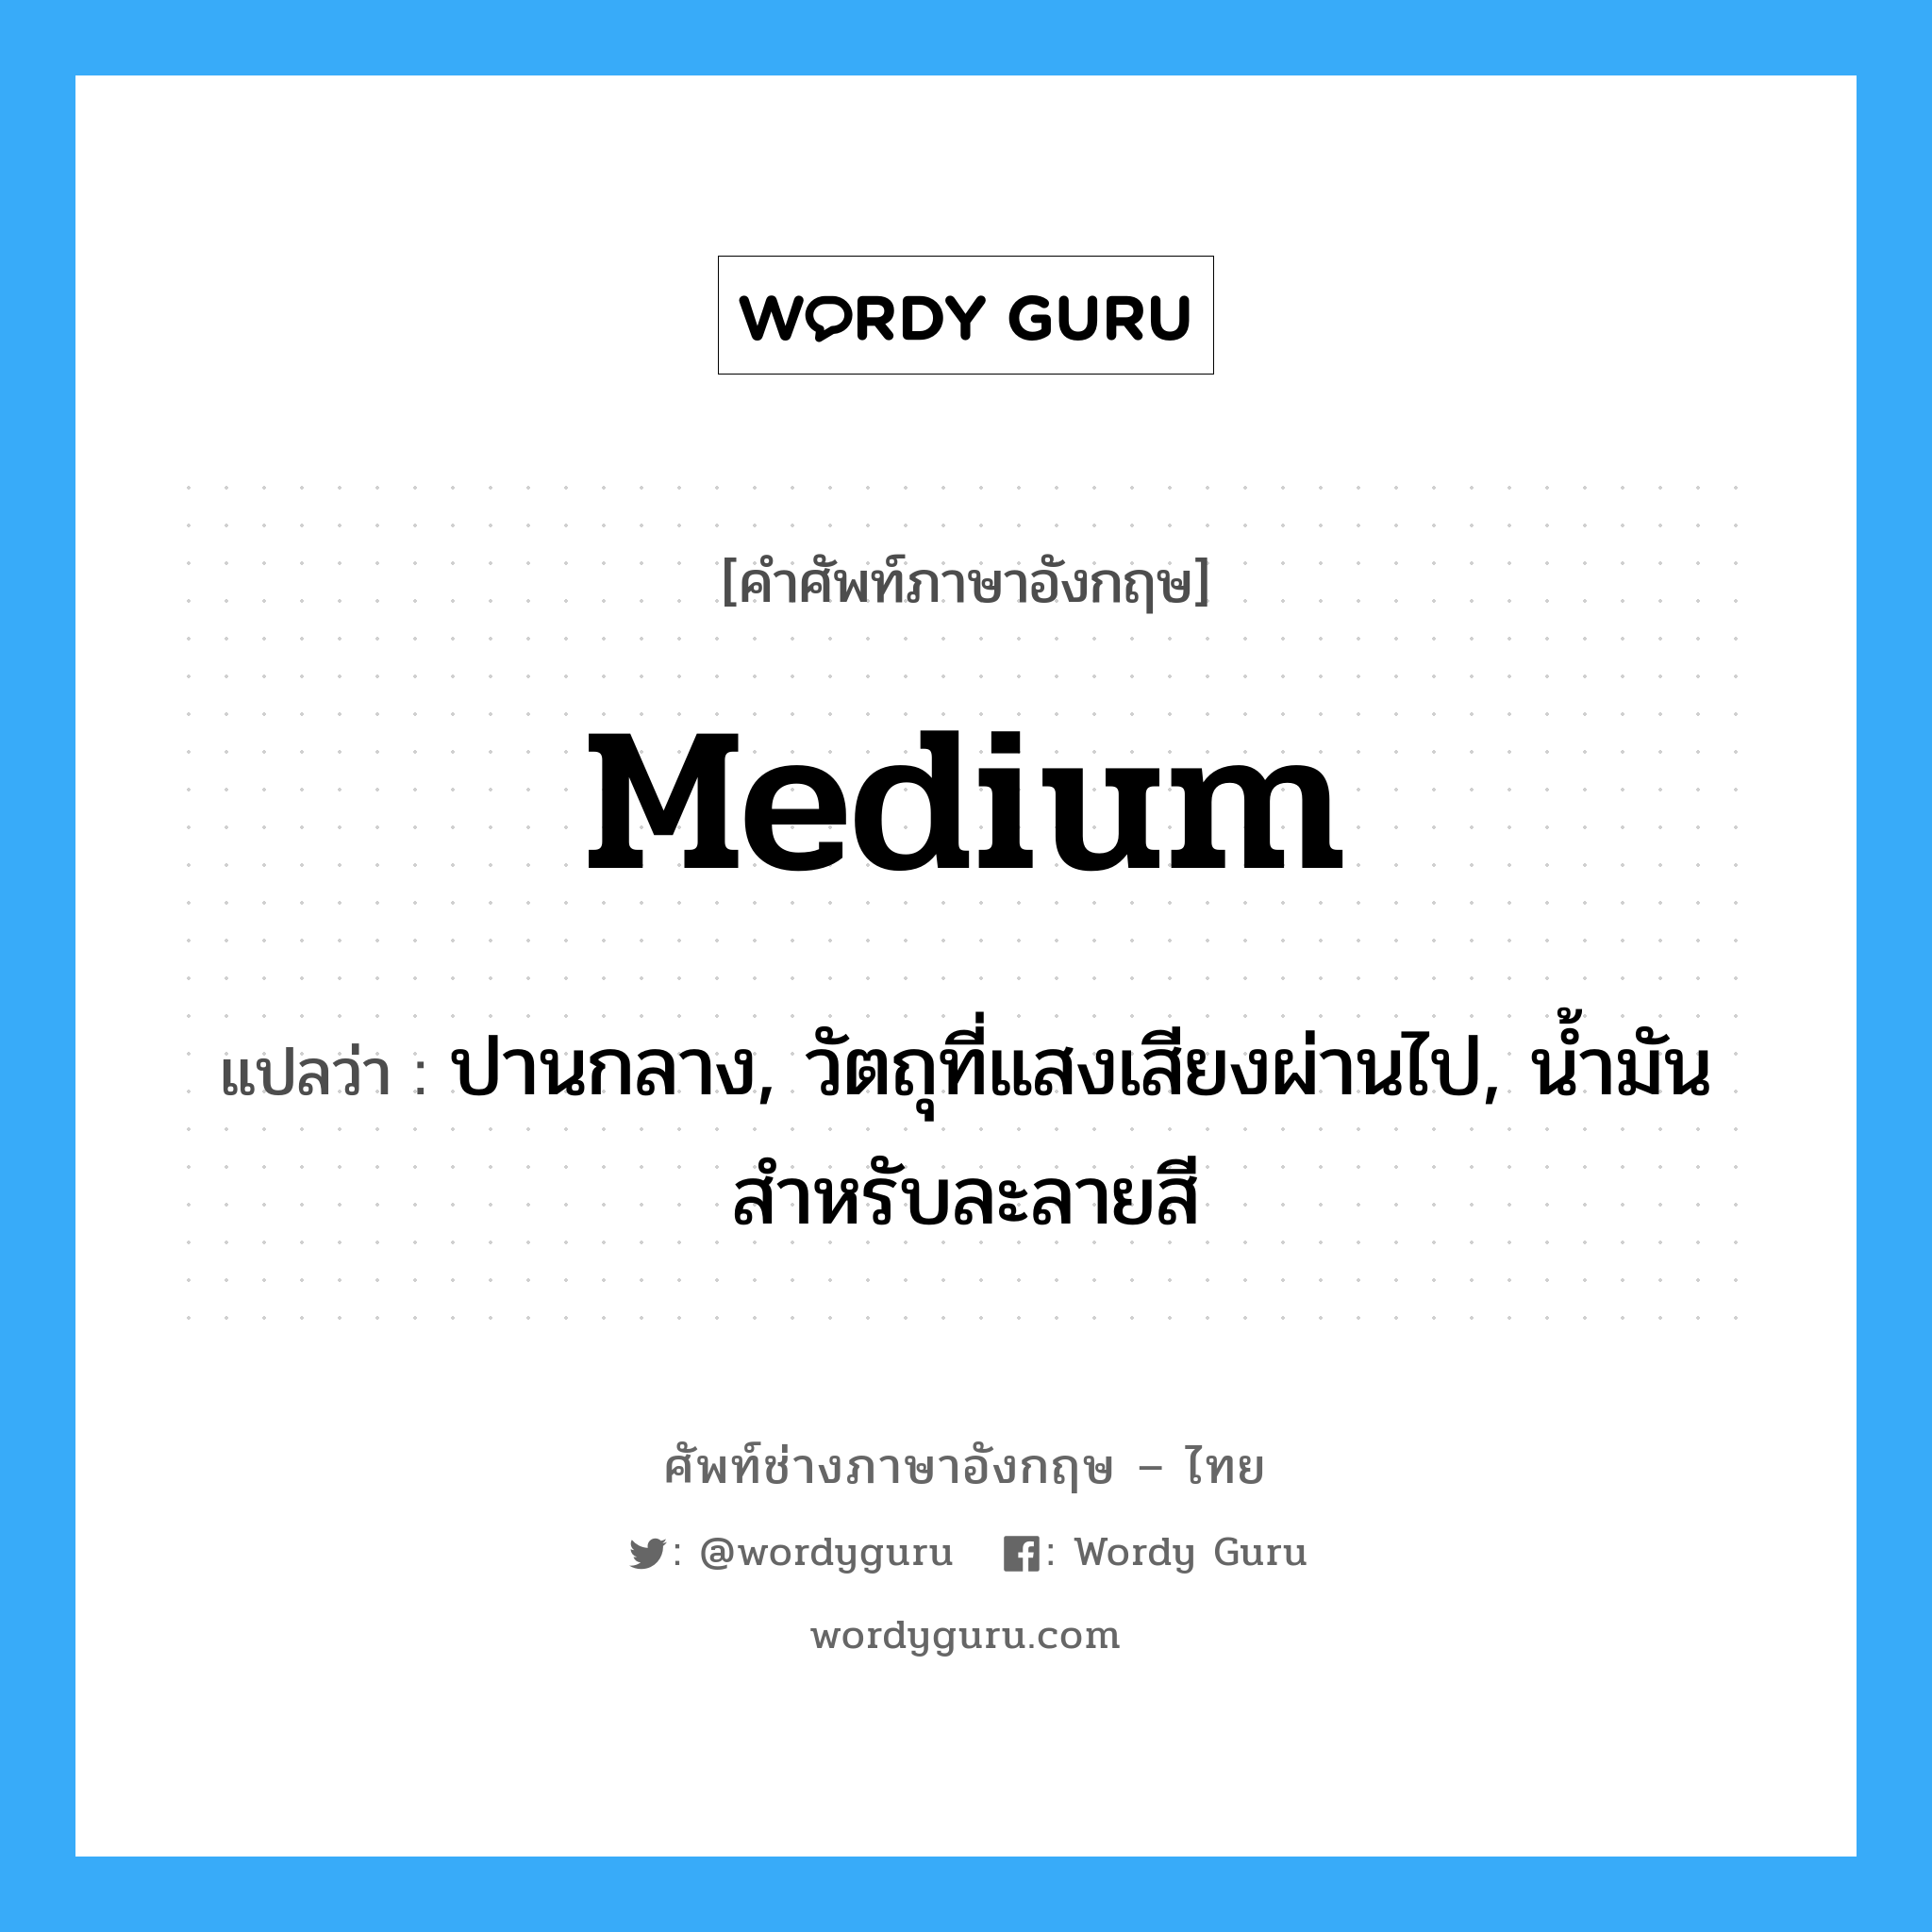 medium แปลว่า?, คำศัพท์ช่างภาษาอังกฤษ - ไทย medium คำศัพท์ภาษาอังกฤษ medium แปลว่า ปานกลาง, วัตถุที่แสงเสียงผ่านไป, น้ำมันสำหรับละลายสี